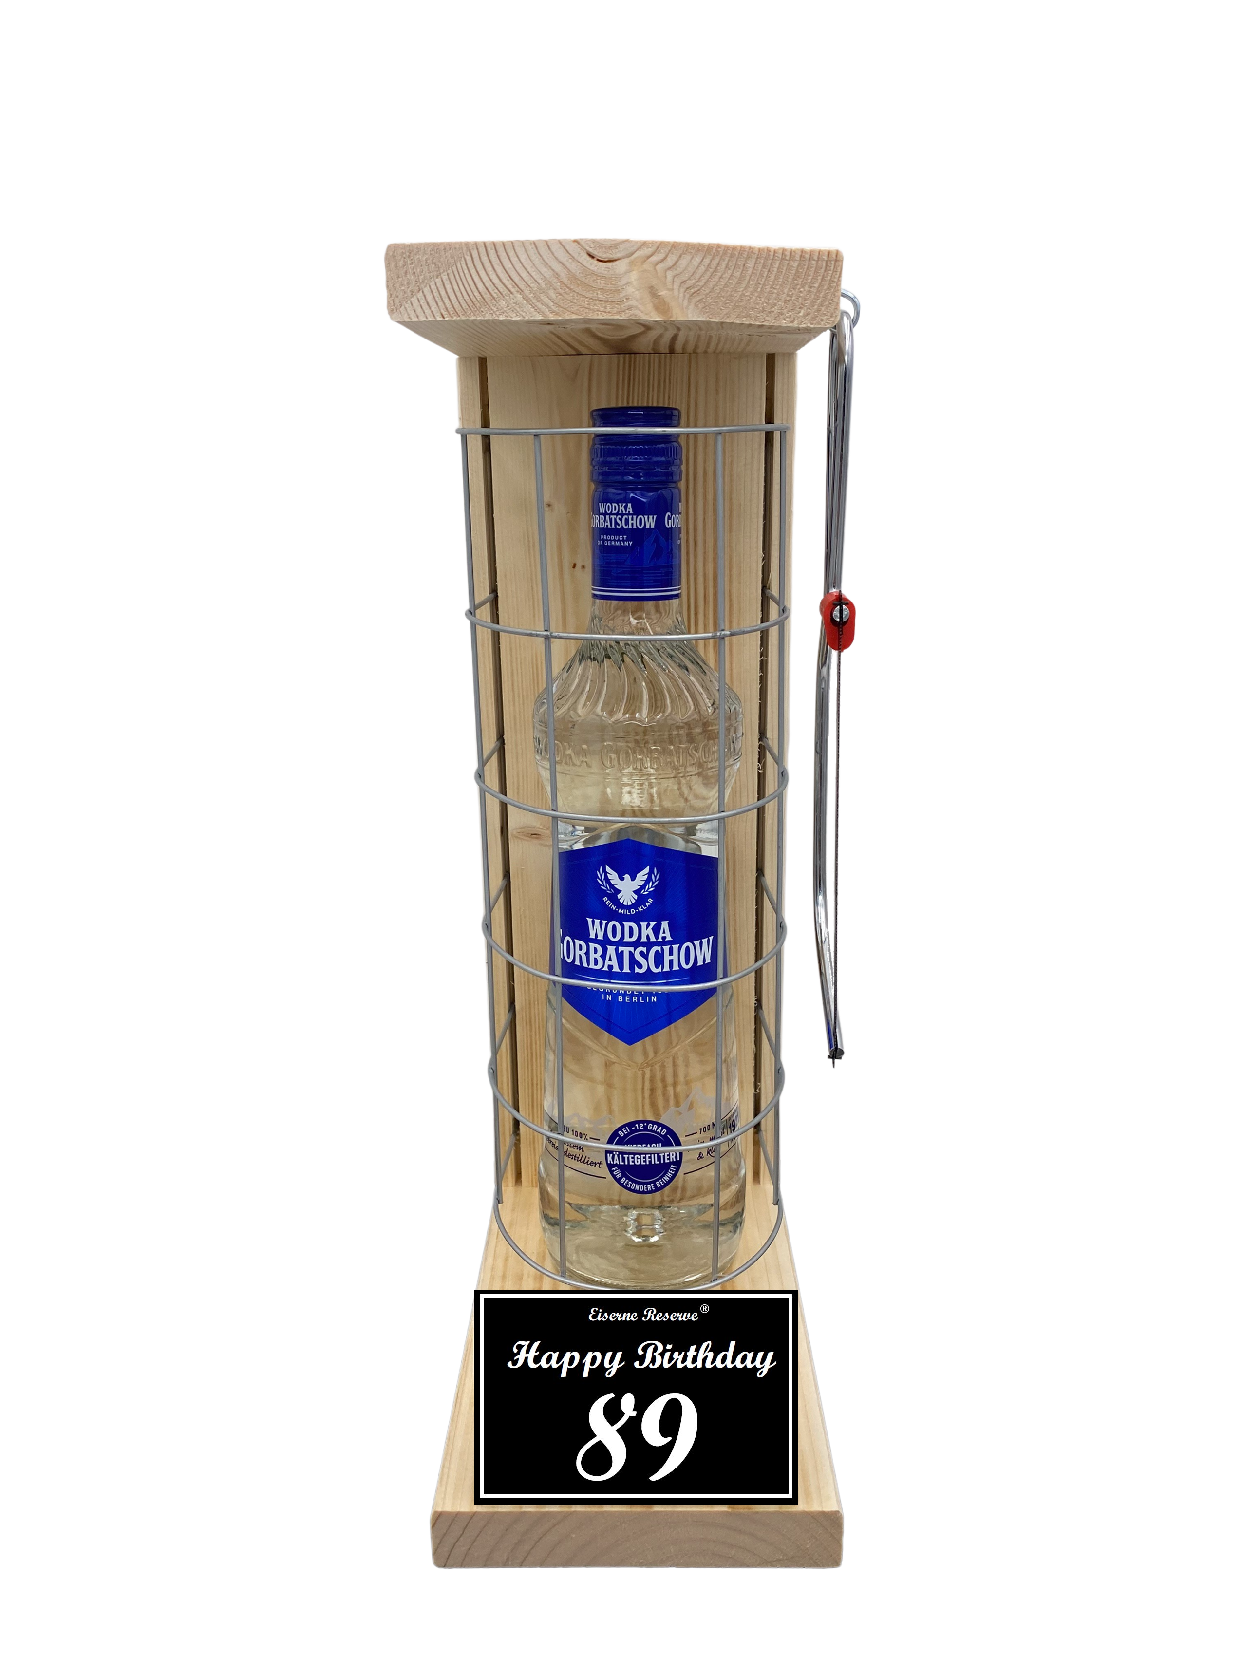 Wodka Geschenk zum 89 Geburtstag - Eiserne Reserve Gitterkäfig